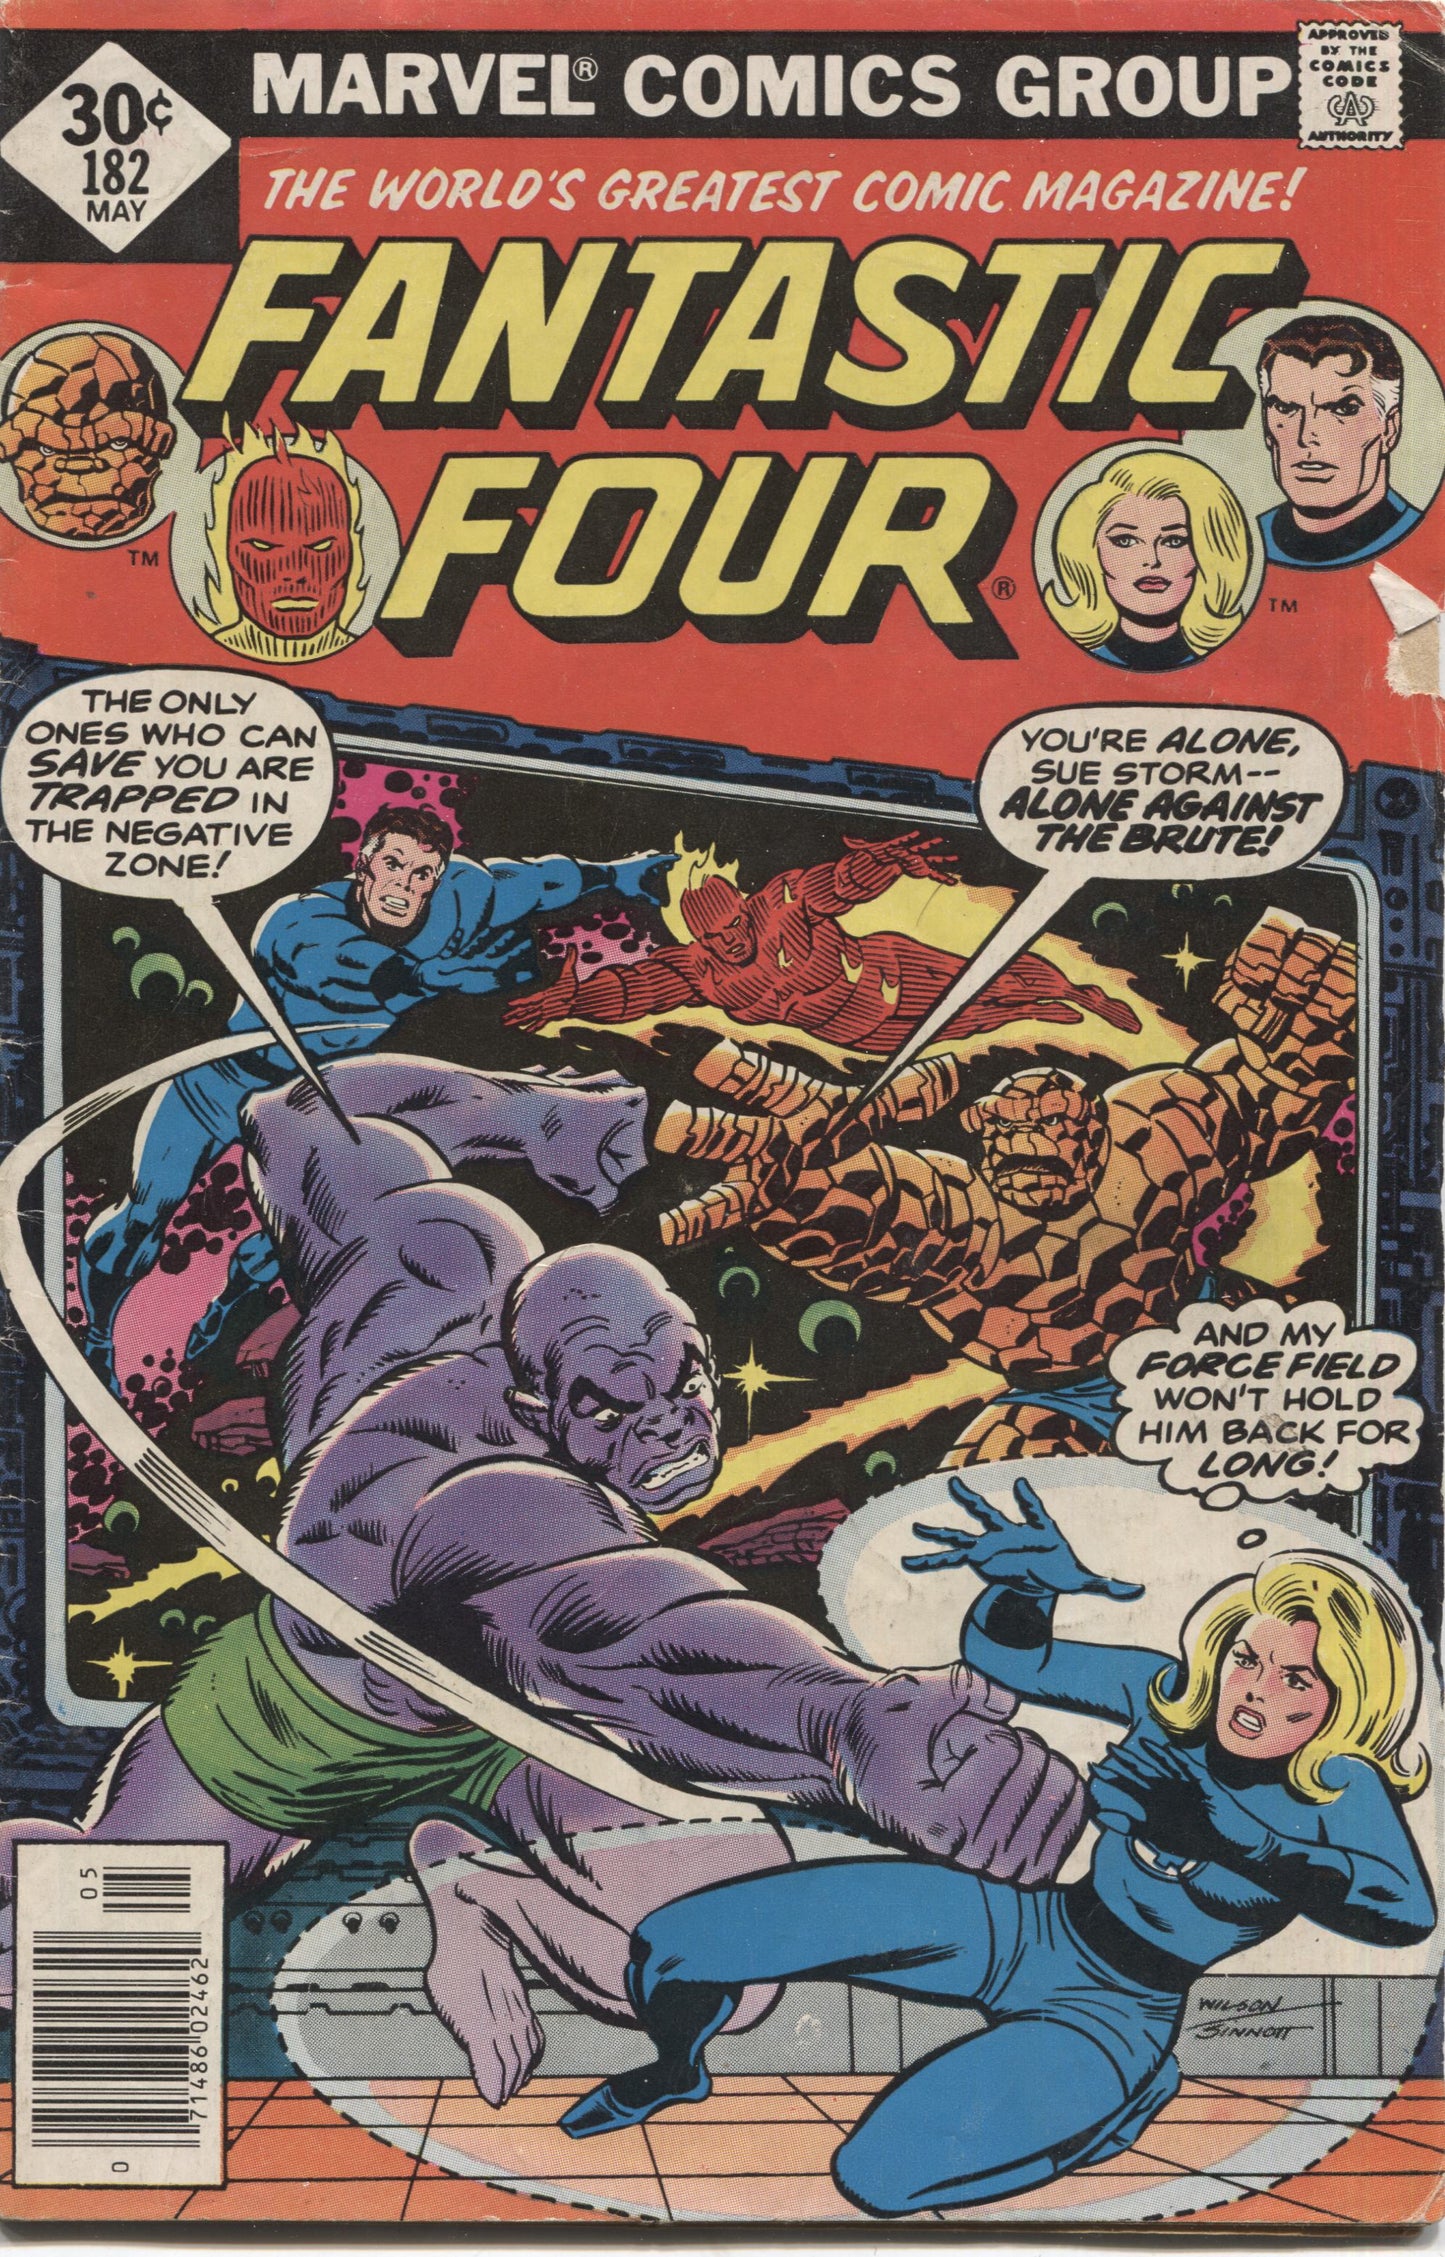 Fantastic Four No. 182, Marvel Comics, May 1977